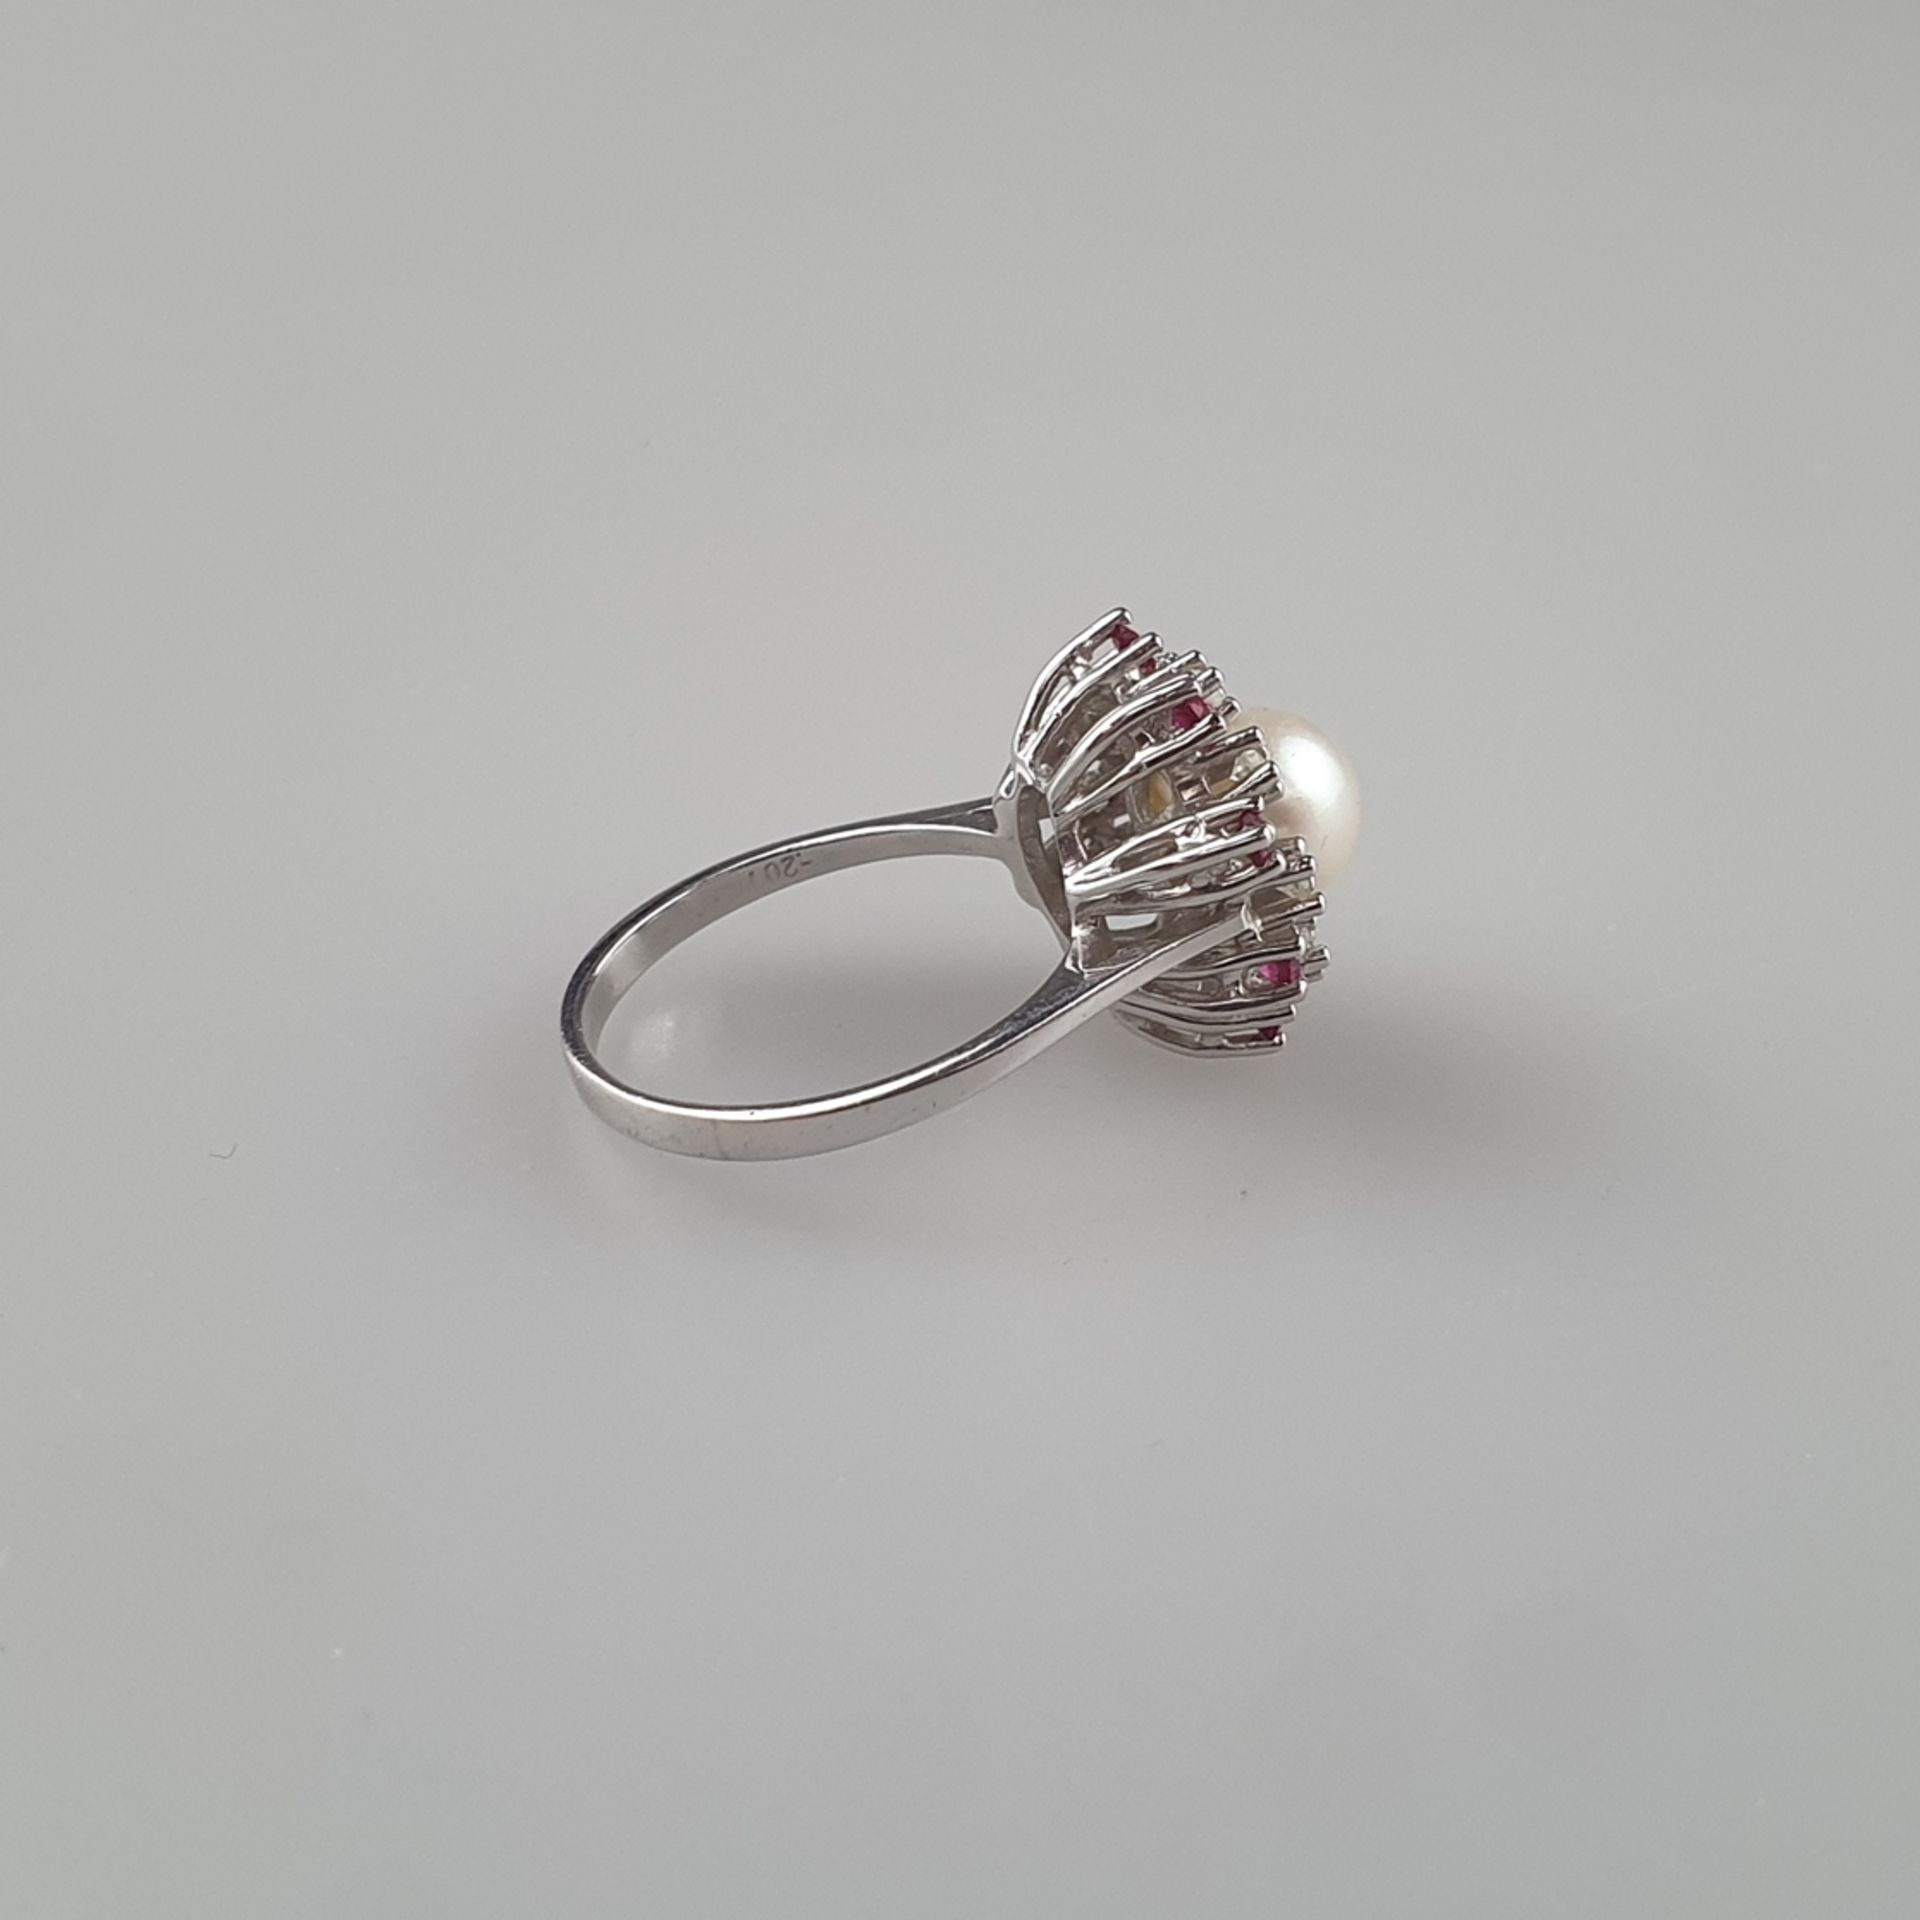 Perlring mit Diamant- und Rubinbesatz - Gelbgold 585/000 (14K), gestempelt, zentrale Perle von 8mm- - Image 4 of 7